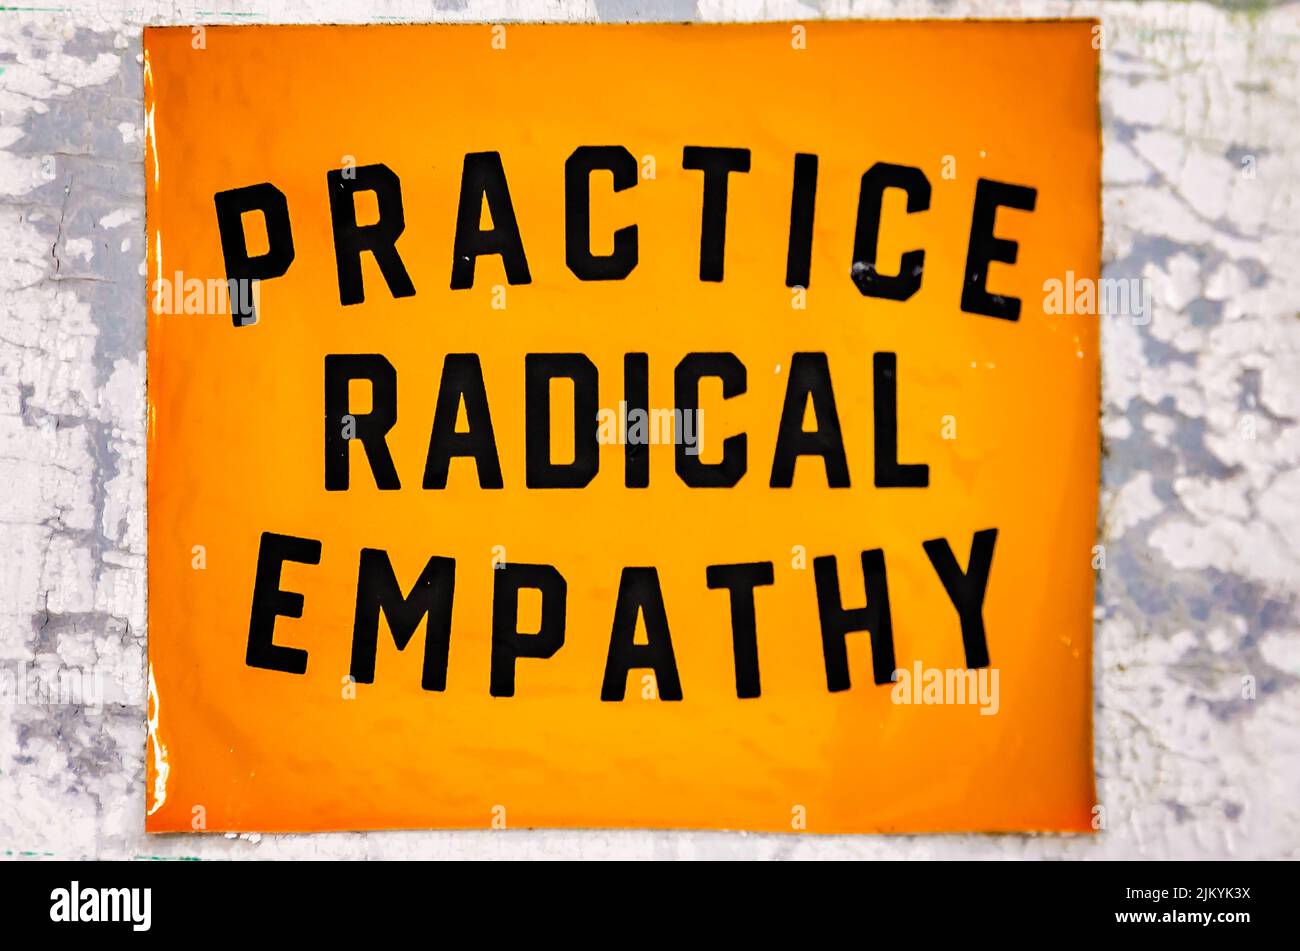 Un signe encourage les gens à « pratiquer l'empathie radicale », 31 juillet 2022, à Ocean Springs, Mississippi. Banque D'Images